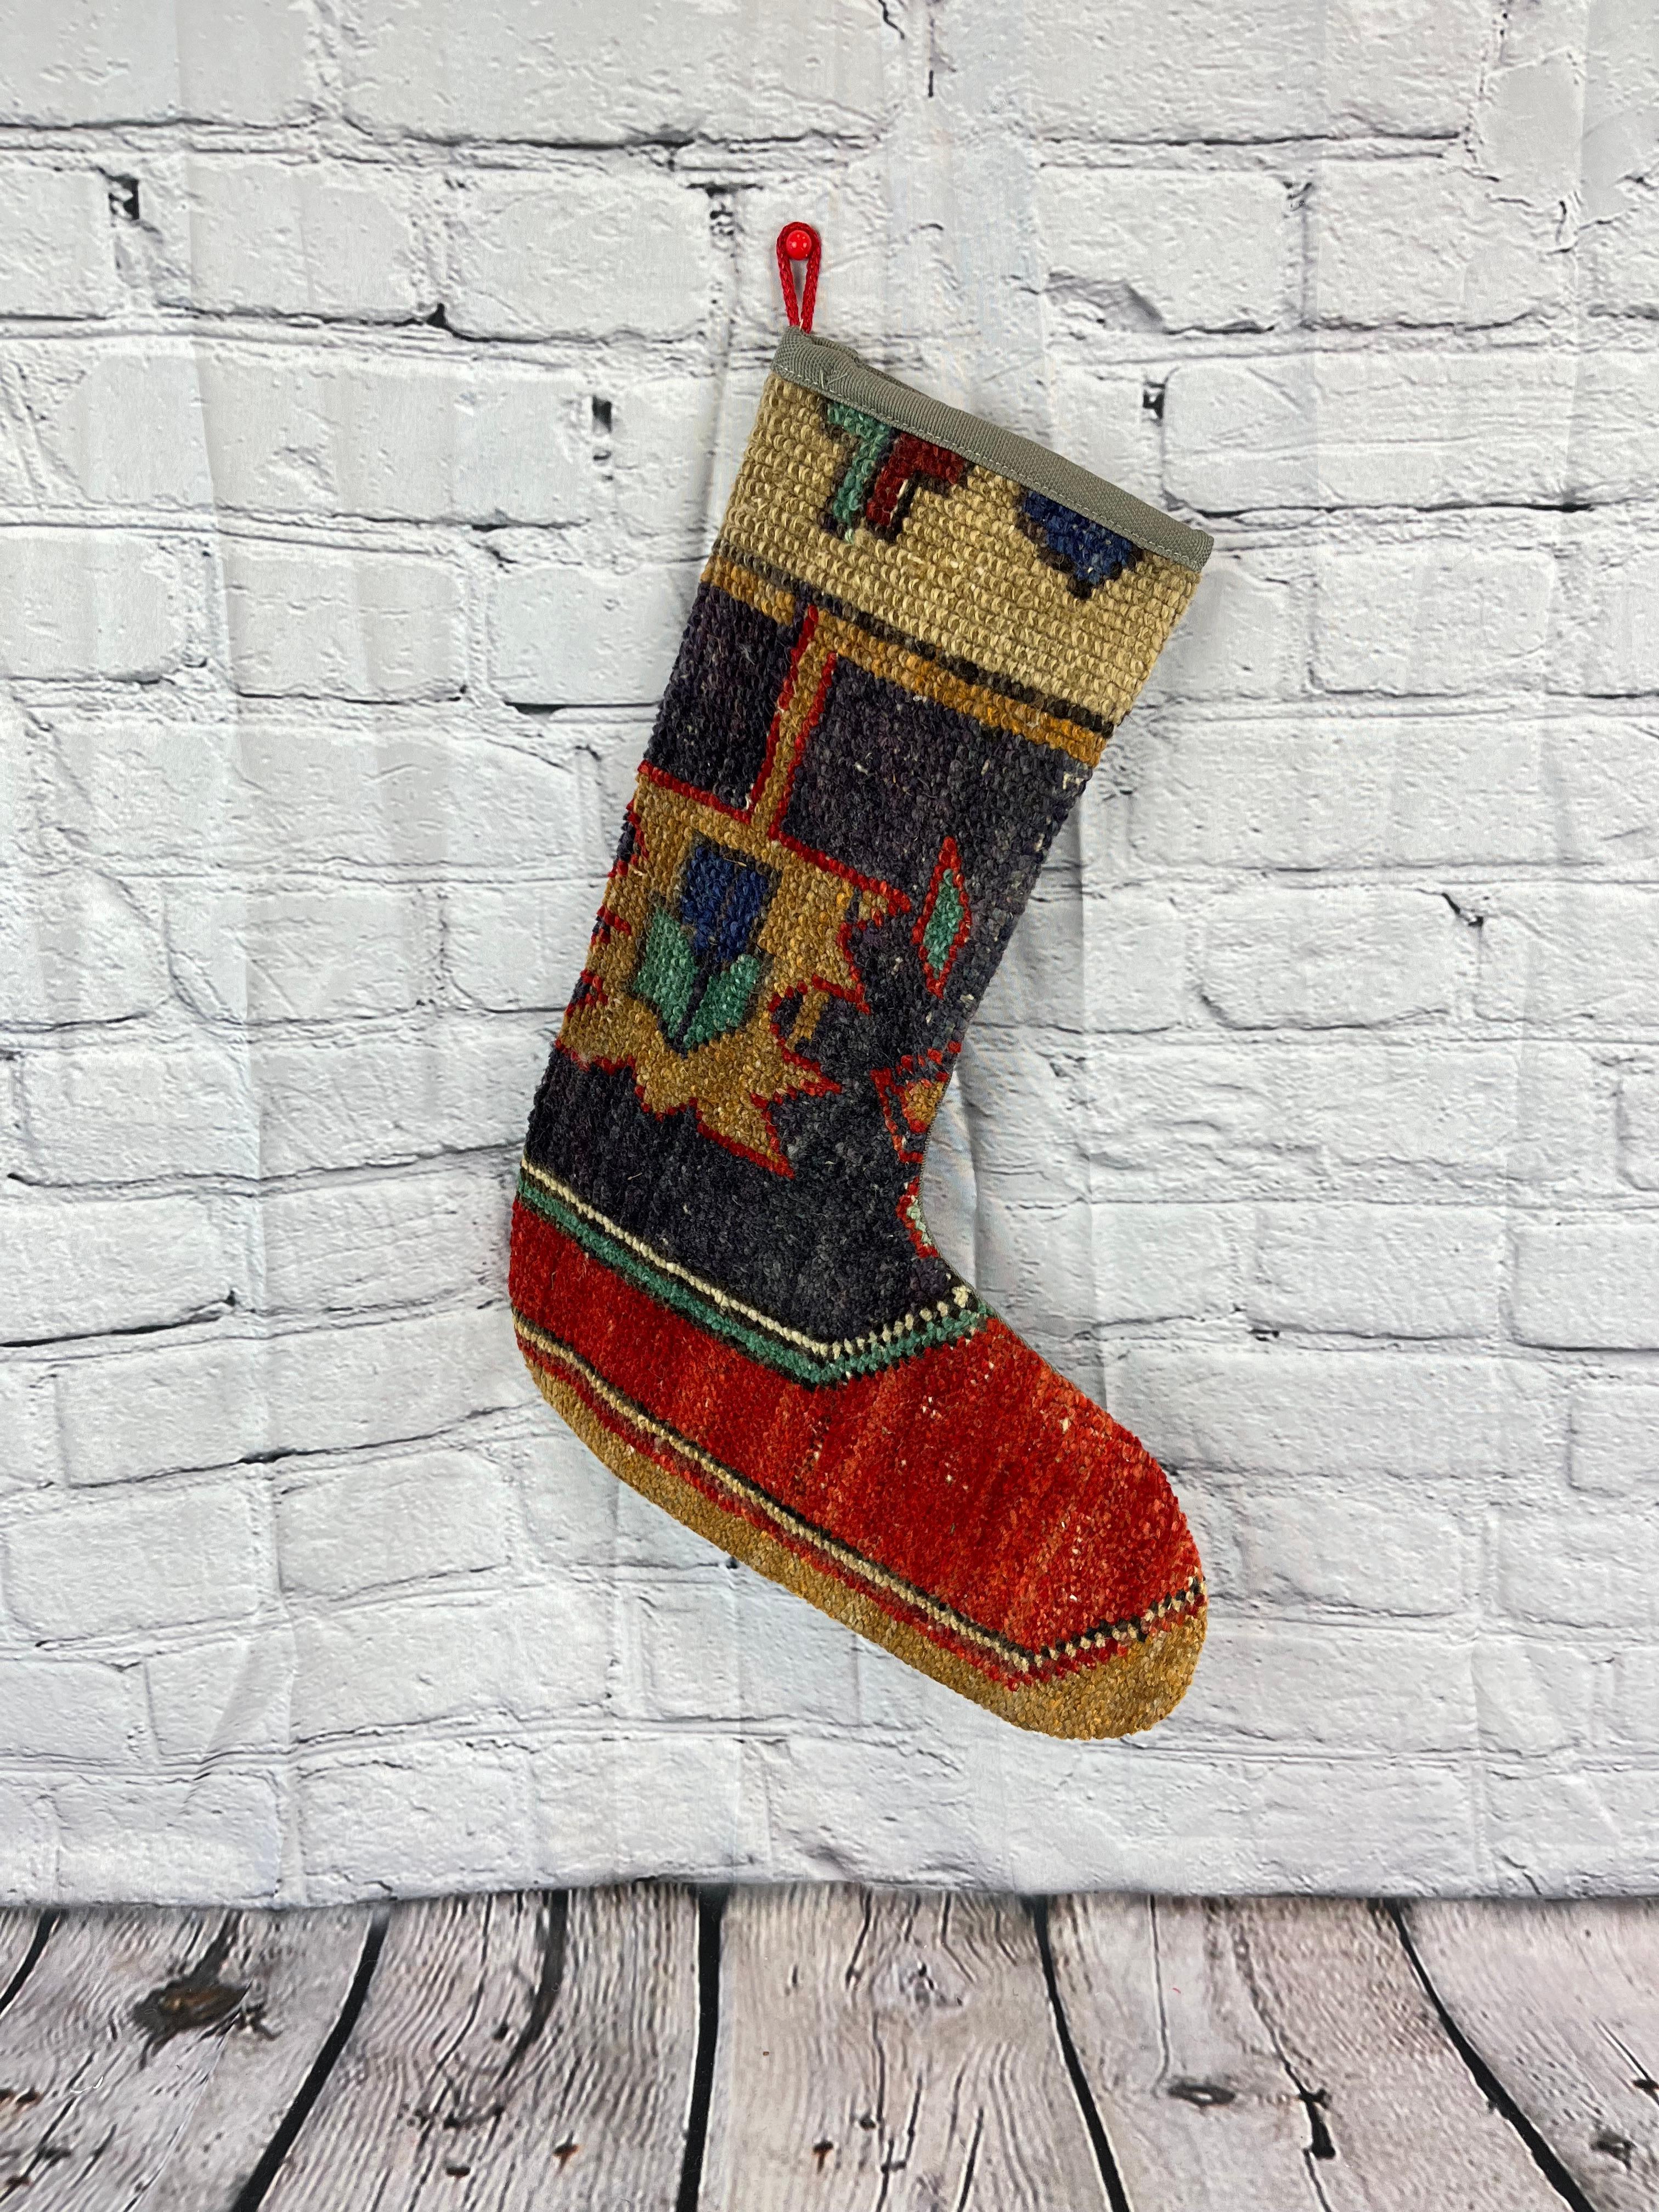 Handgefertigt
Vintage By aus den 1960er Jahren
MATERIALIEN: Wolle, Baumwolle

Nachhaltiger, upgecycelter Weihnachtsstrumpf aus türkischen Teppichen, hergestellt aus handgewebten Teppichfragmenten. 
Breite: 13 Zoll
Höhe: 17